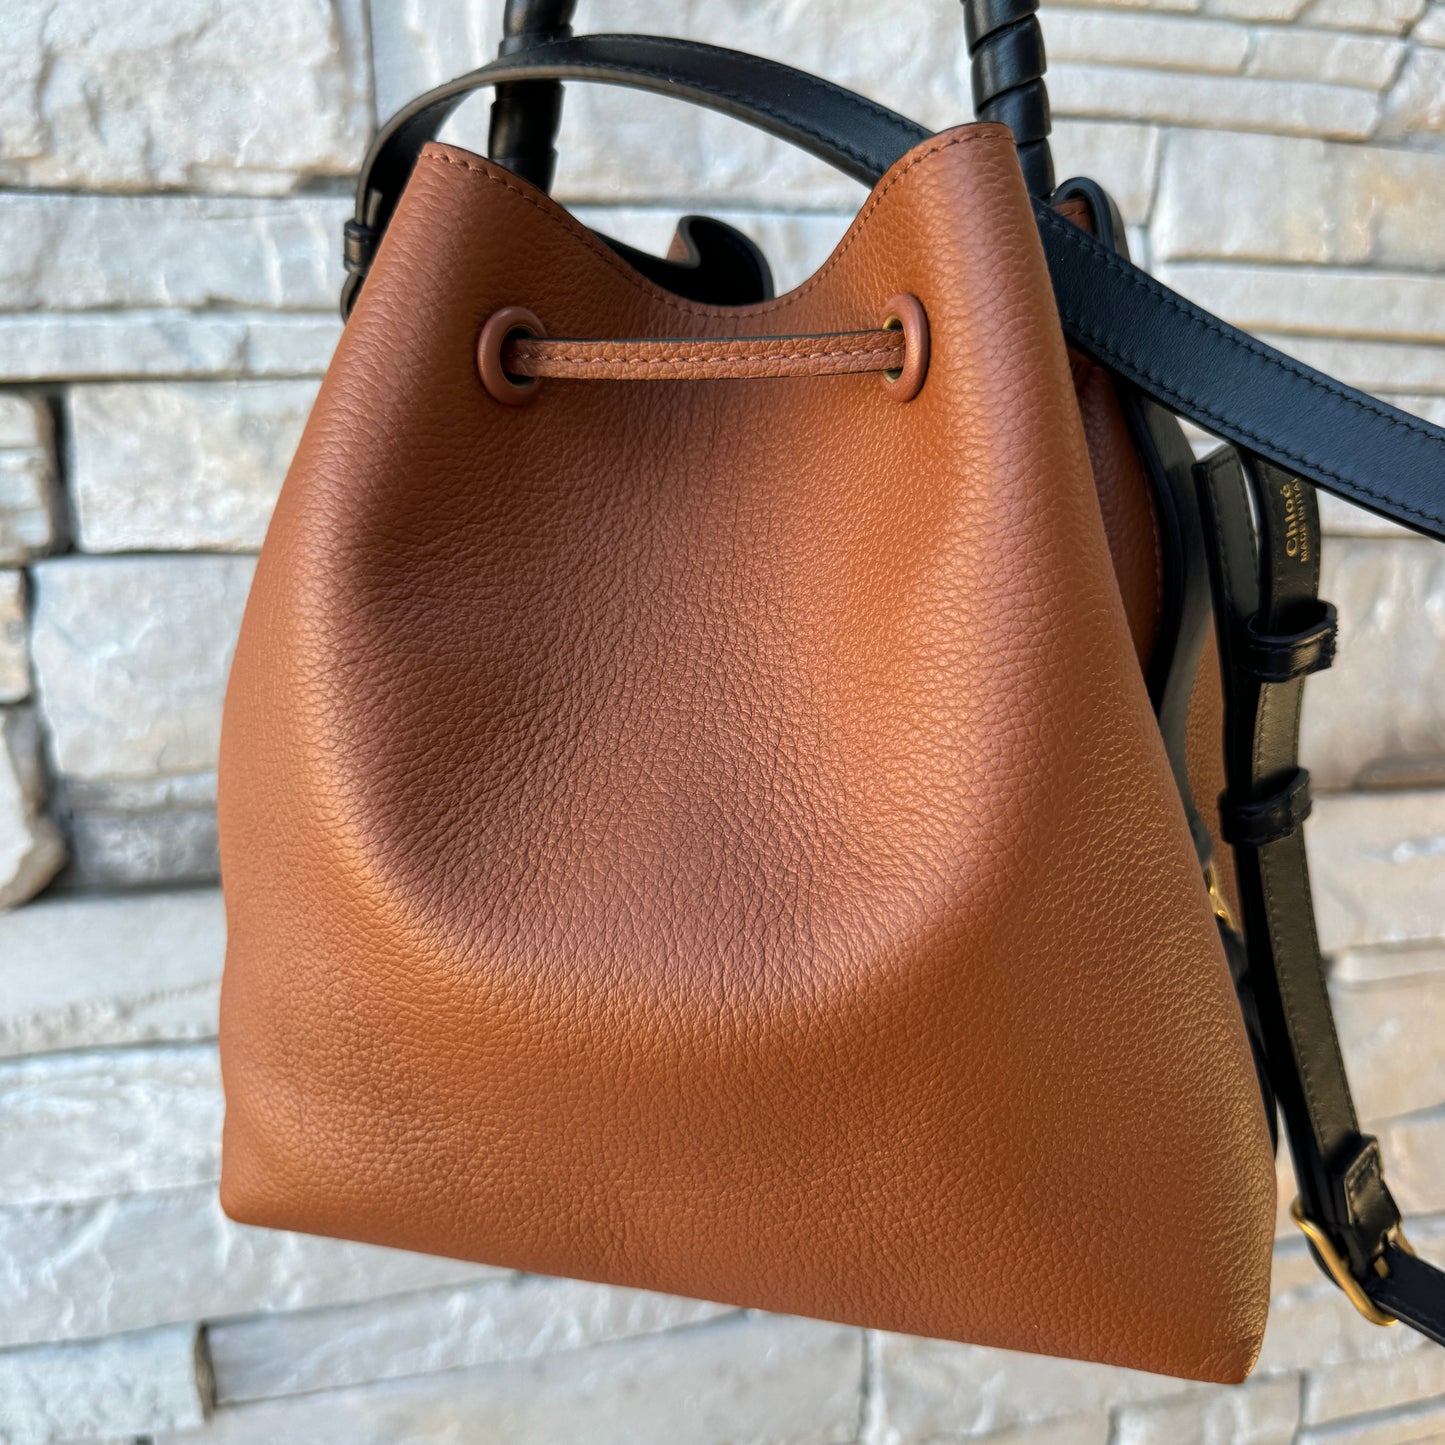 Chloé Marcie Leather Bucket Bag